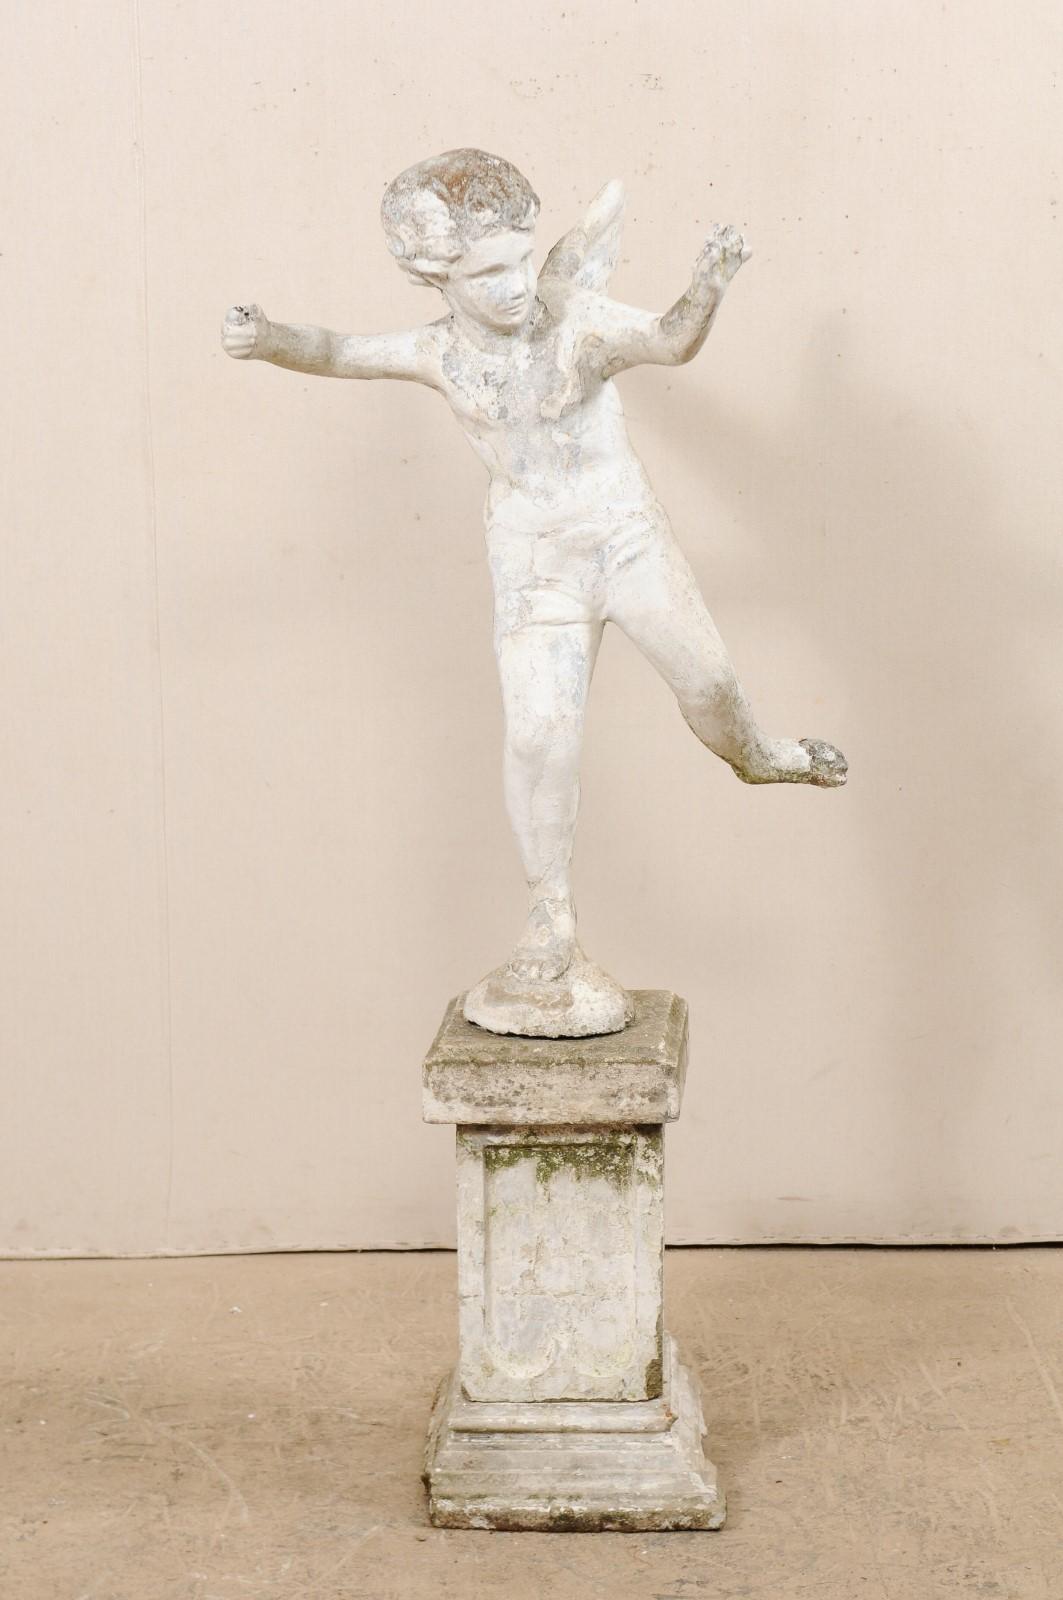 Grande sculpture de jardin française représentant un garçon ange ailé, datant du début du 20e siècle. Cette statue antique originaire de France représente avec douceur la figure de Cupidon, les bras levés comme s'il tirait une flèche, et une jambe